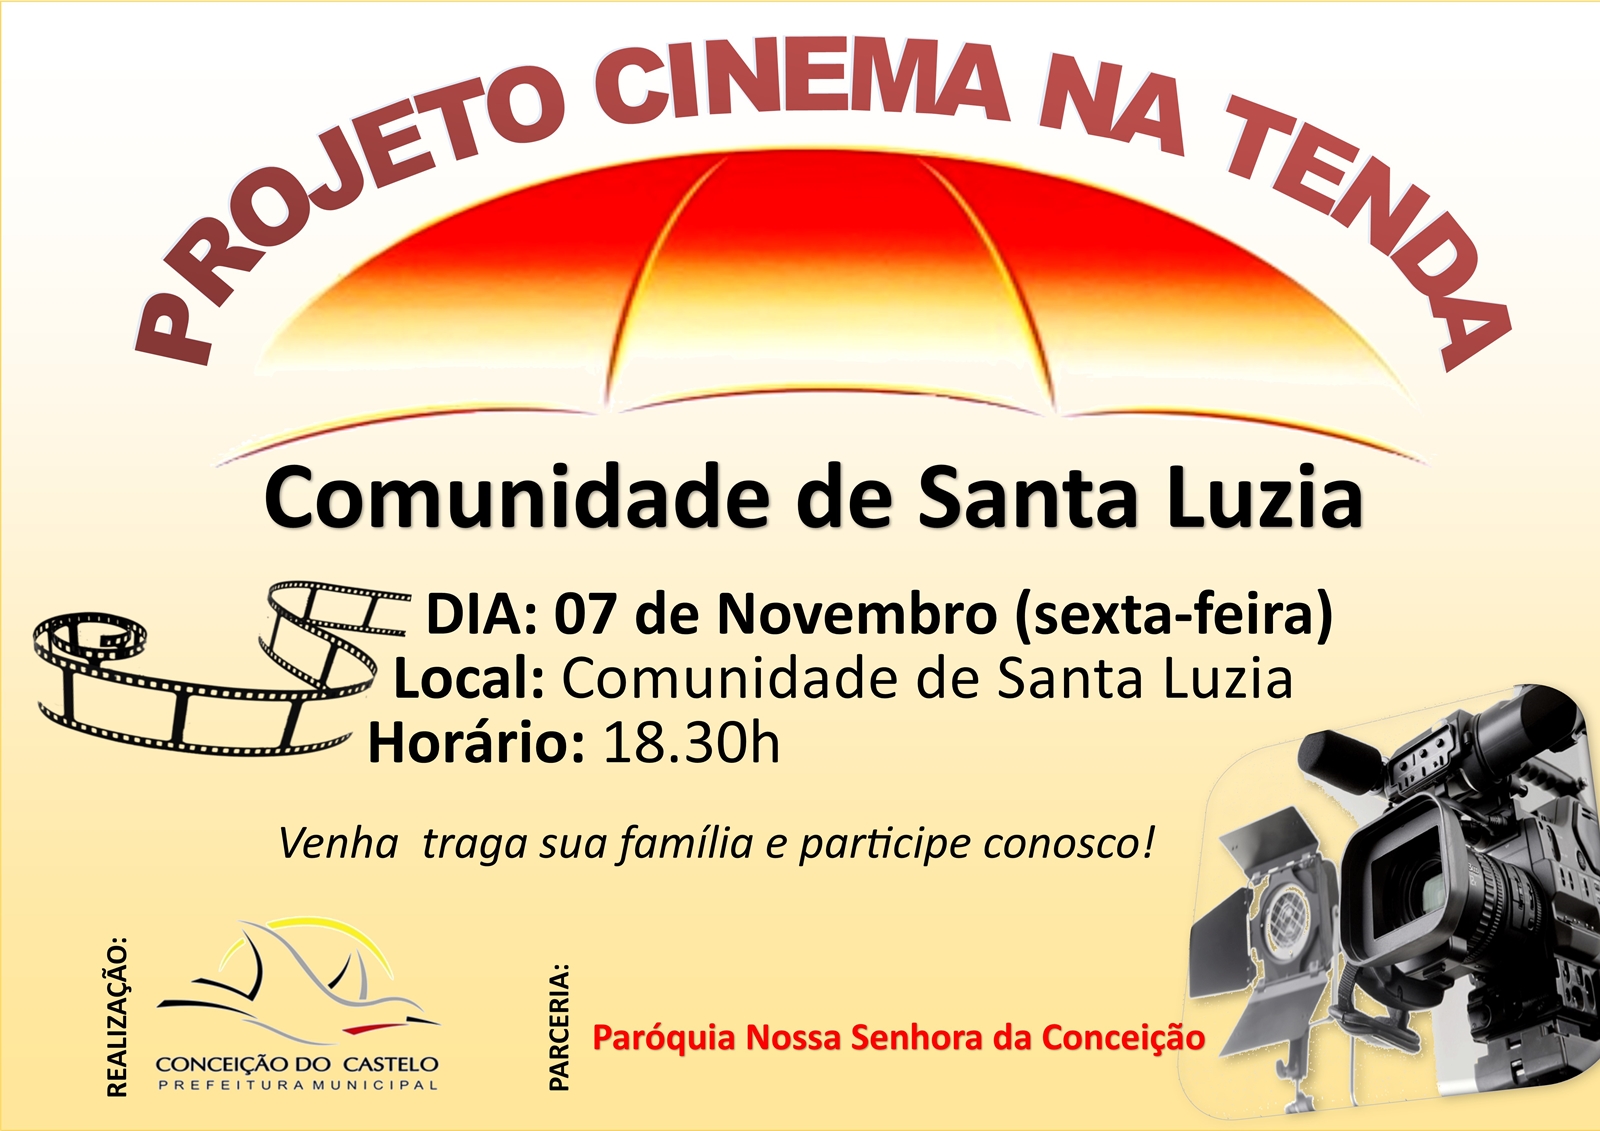 Comunidade de Santa Luzia recebe o Projeto Cinema na Tenda nesta sexta-feira, 07